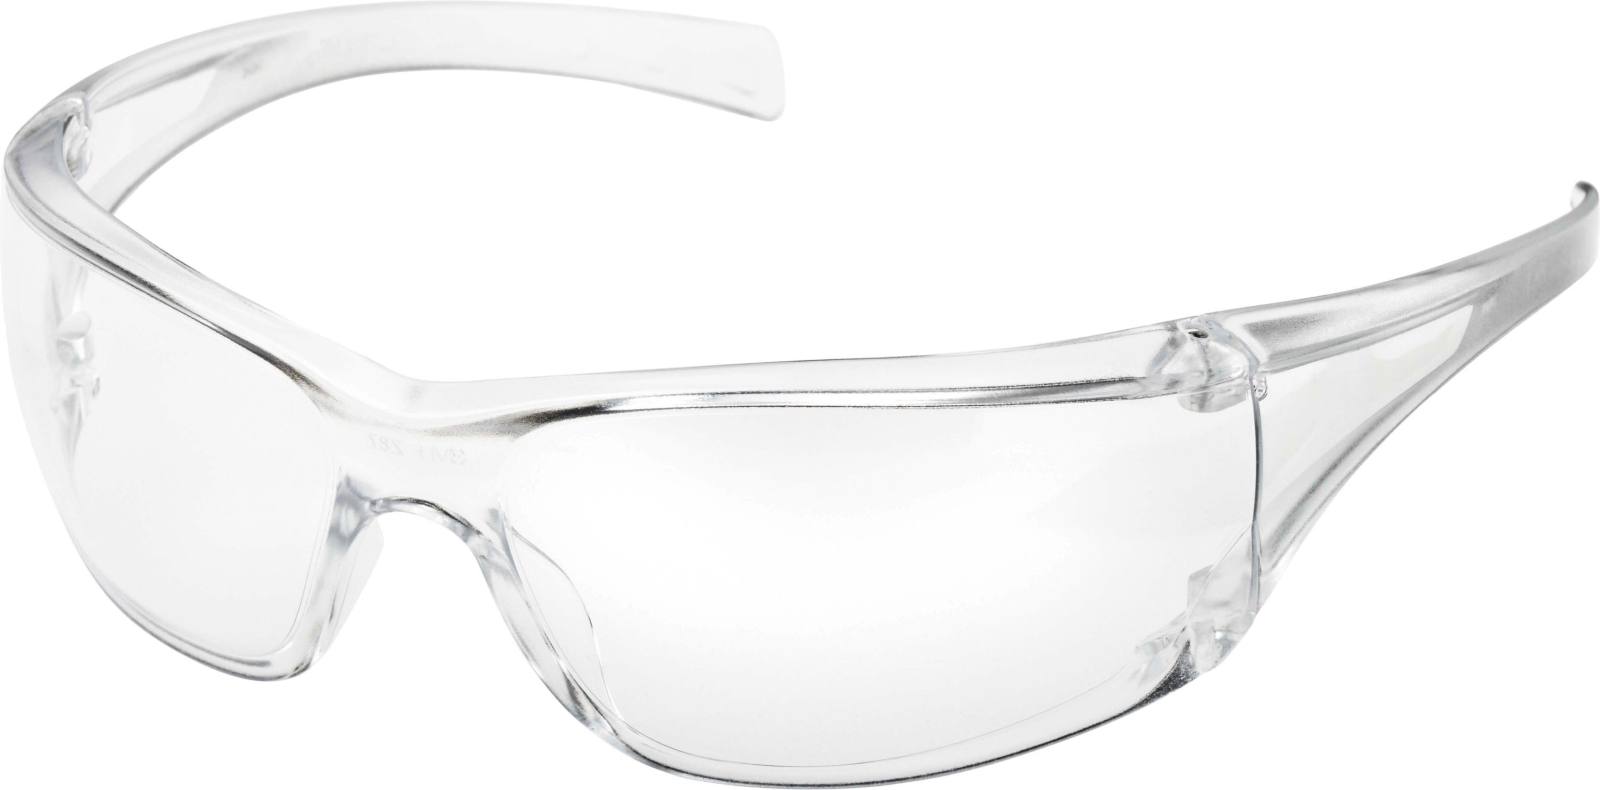 3M Gafas de protección Virtua con revestimiento antirrayado, lentes transparentes, 71500-00001